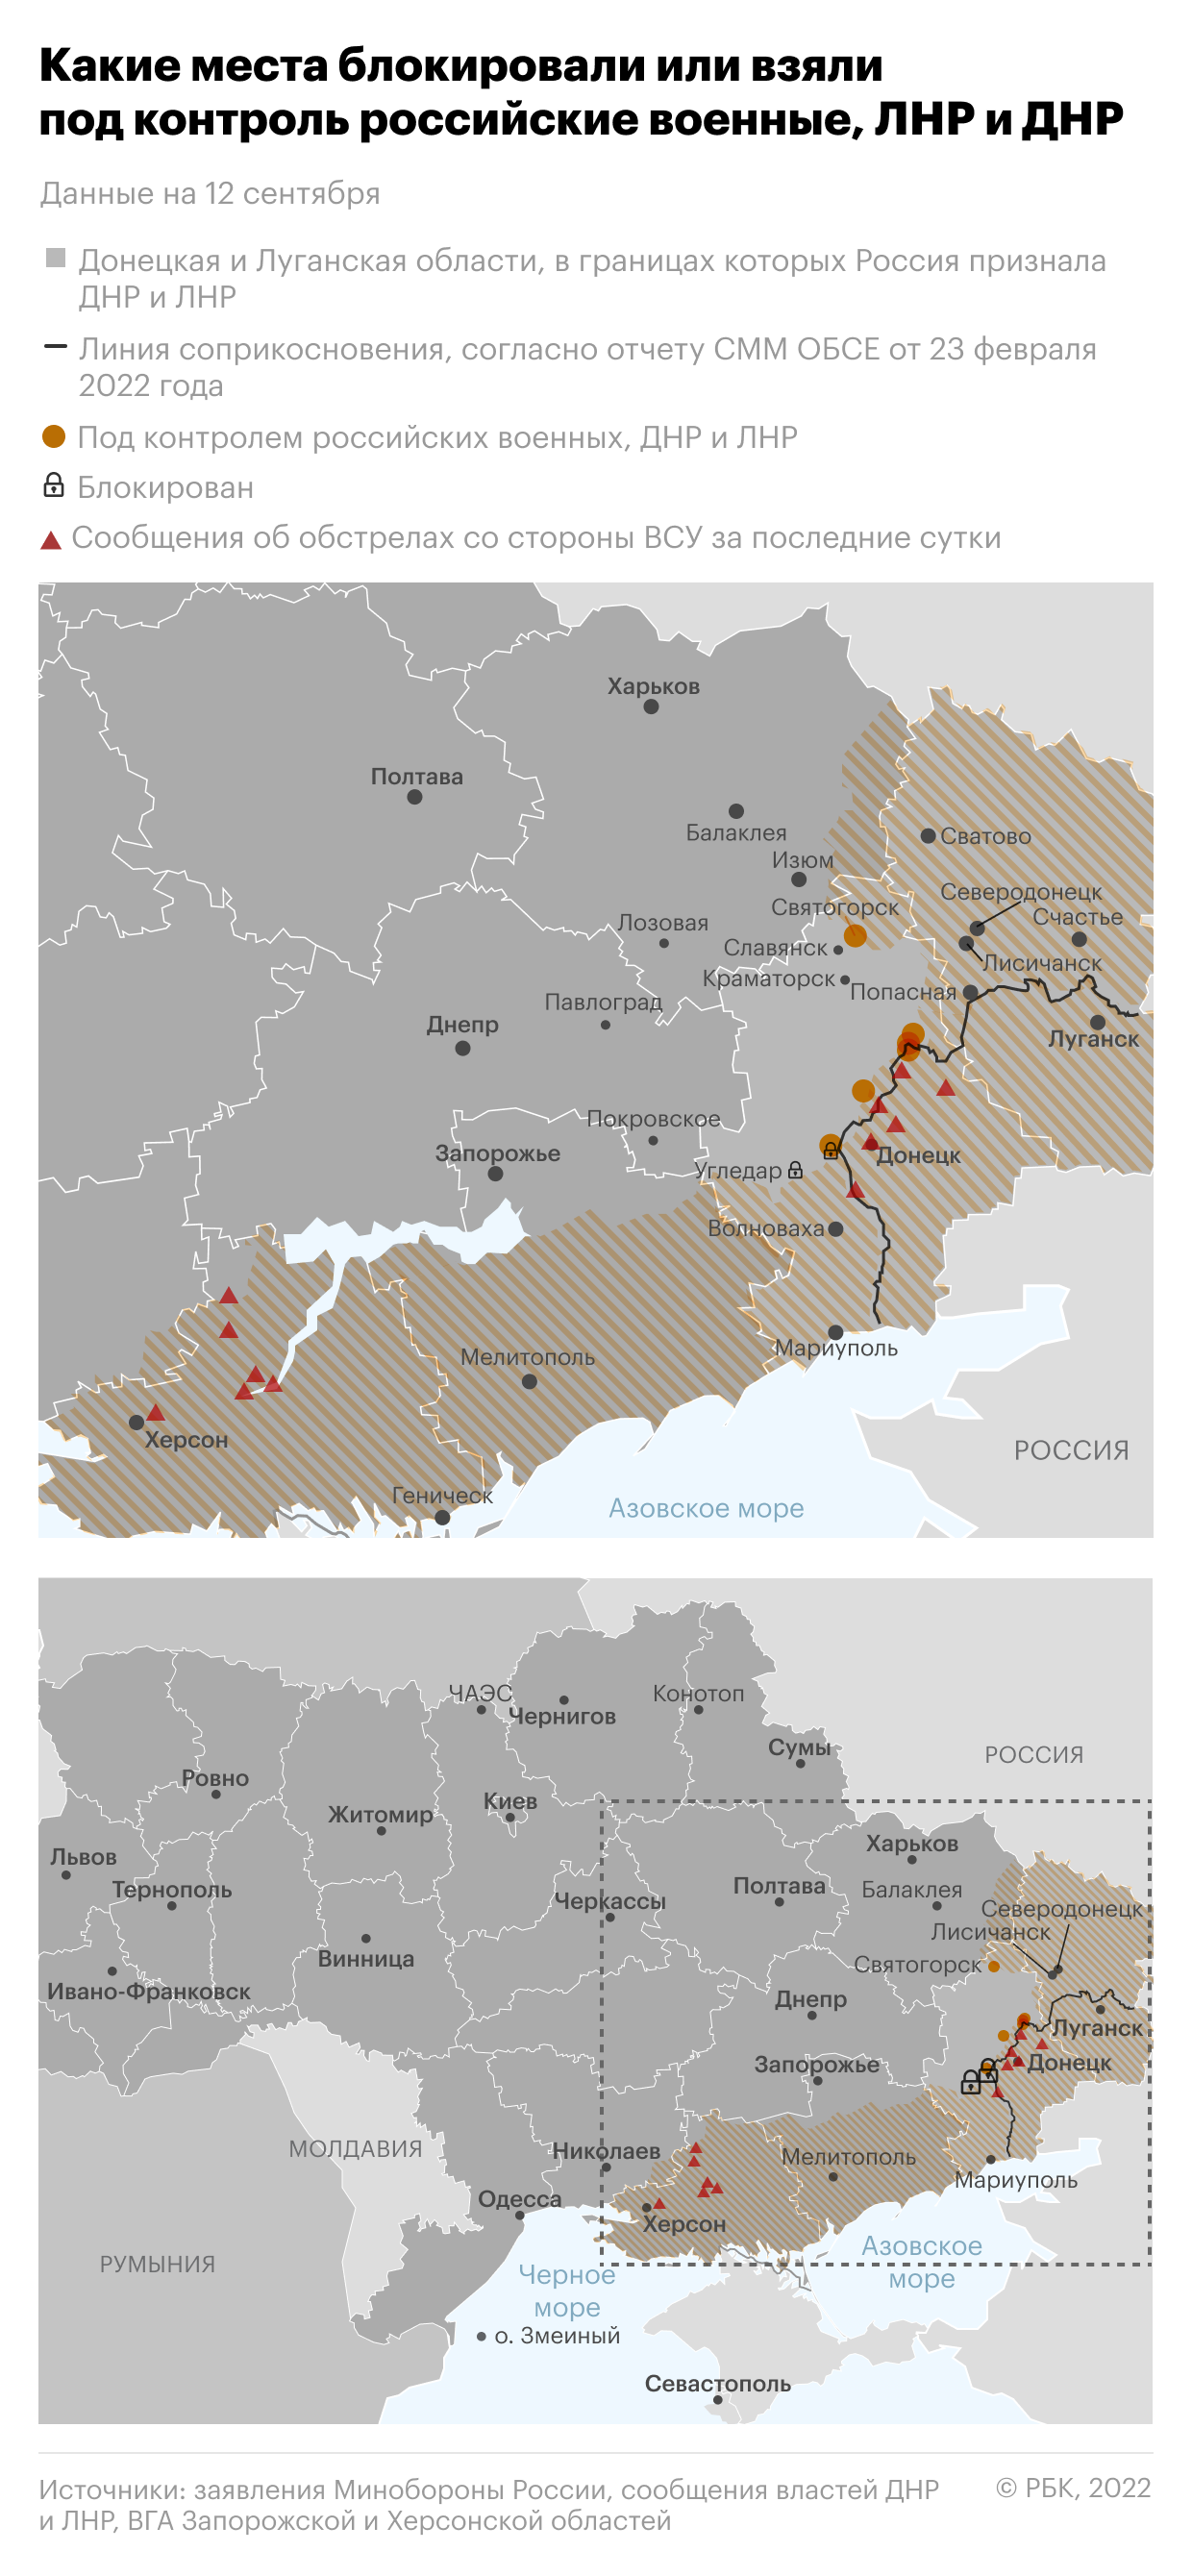 WSJ узнал о планах Украины попросить у США ракеты с дальностью до 300 км"/>













